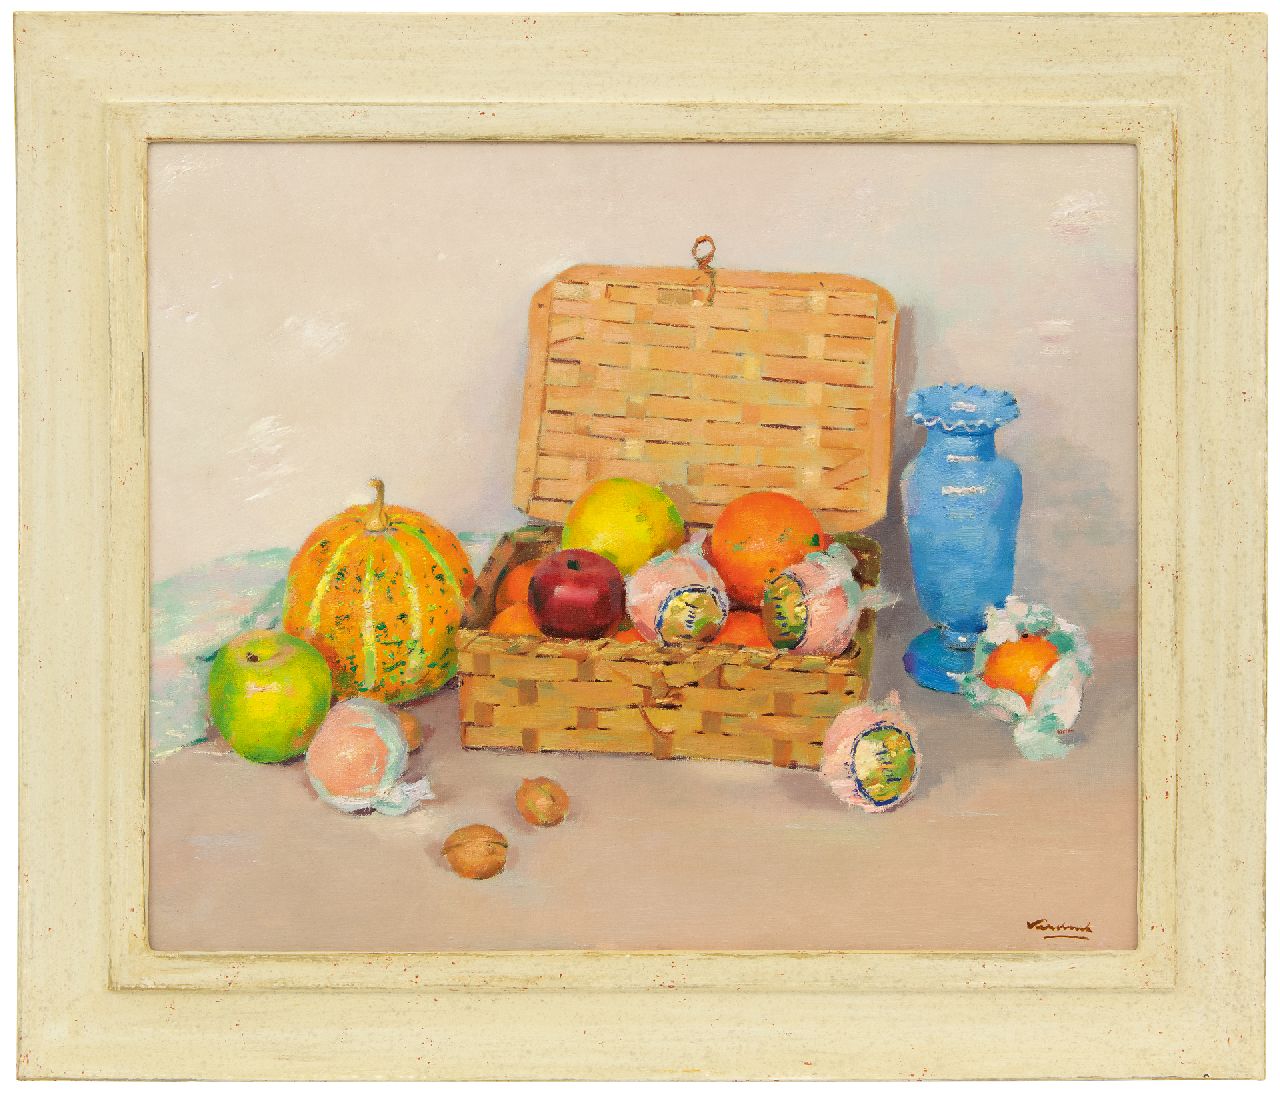 Verdonk F.W.  | Frederik Willem 'Frits' Verdonk | Schilderijen te koop aangeboden | Stilleven met fruitmandje, olieverf op doek op board 46,0 x 56,0 cm, gesigneerd rechtsonder